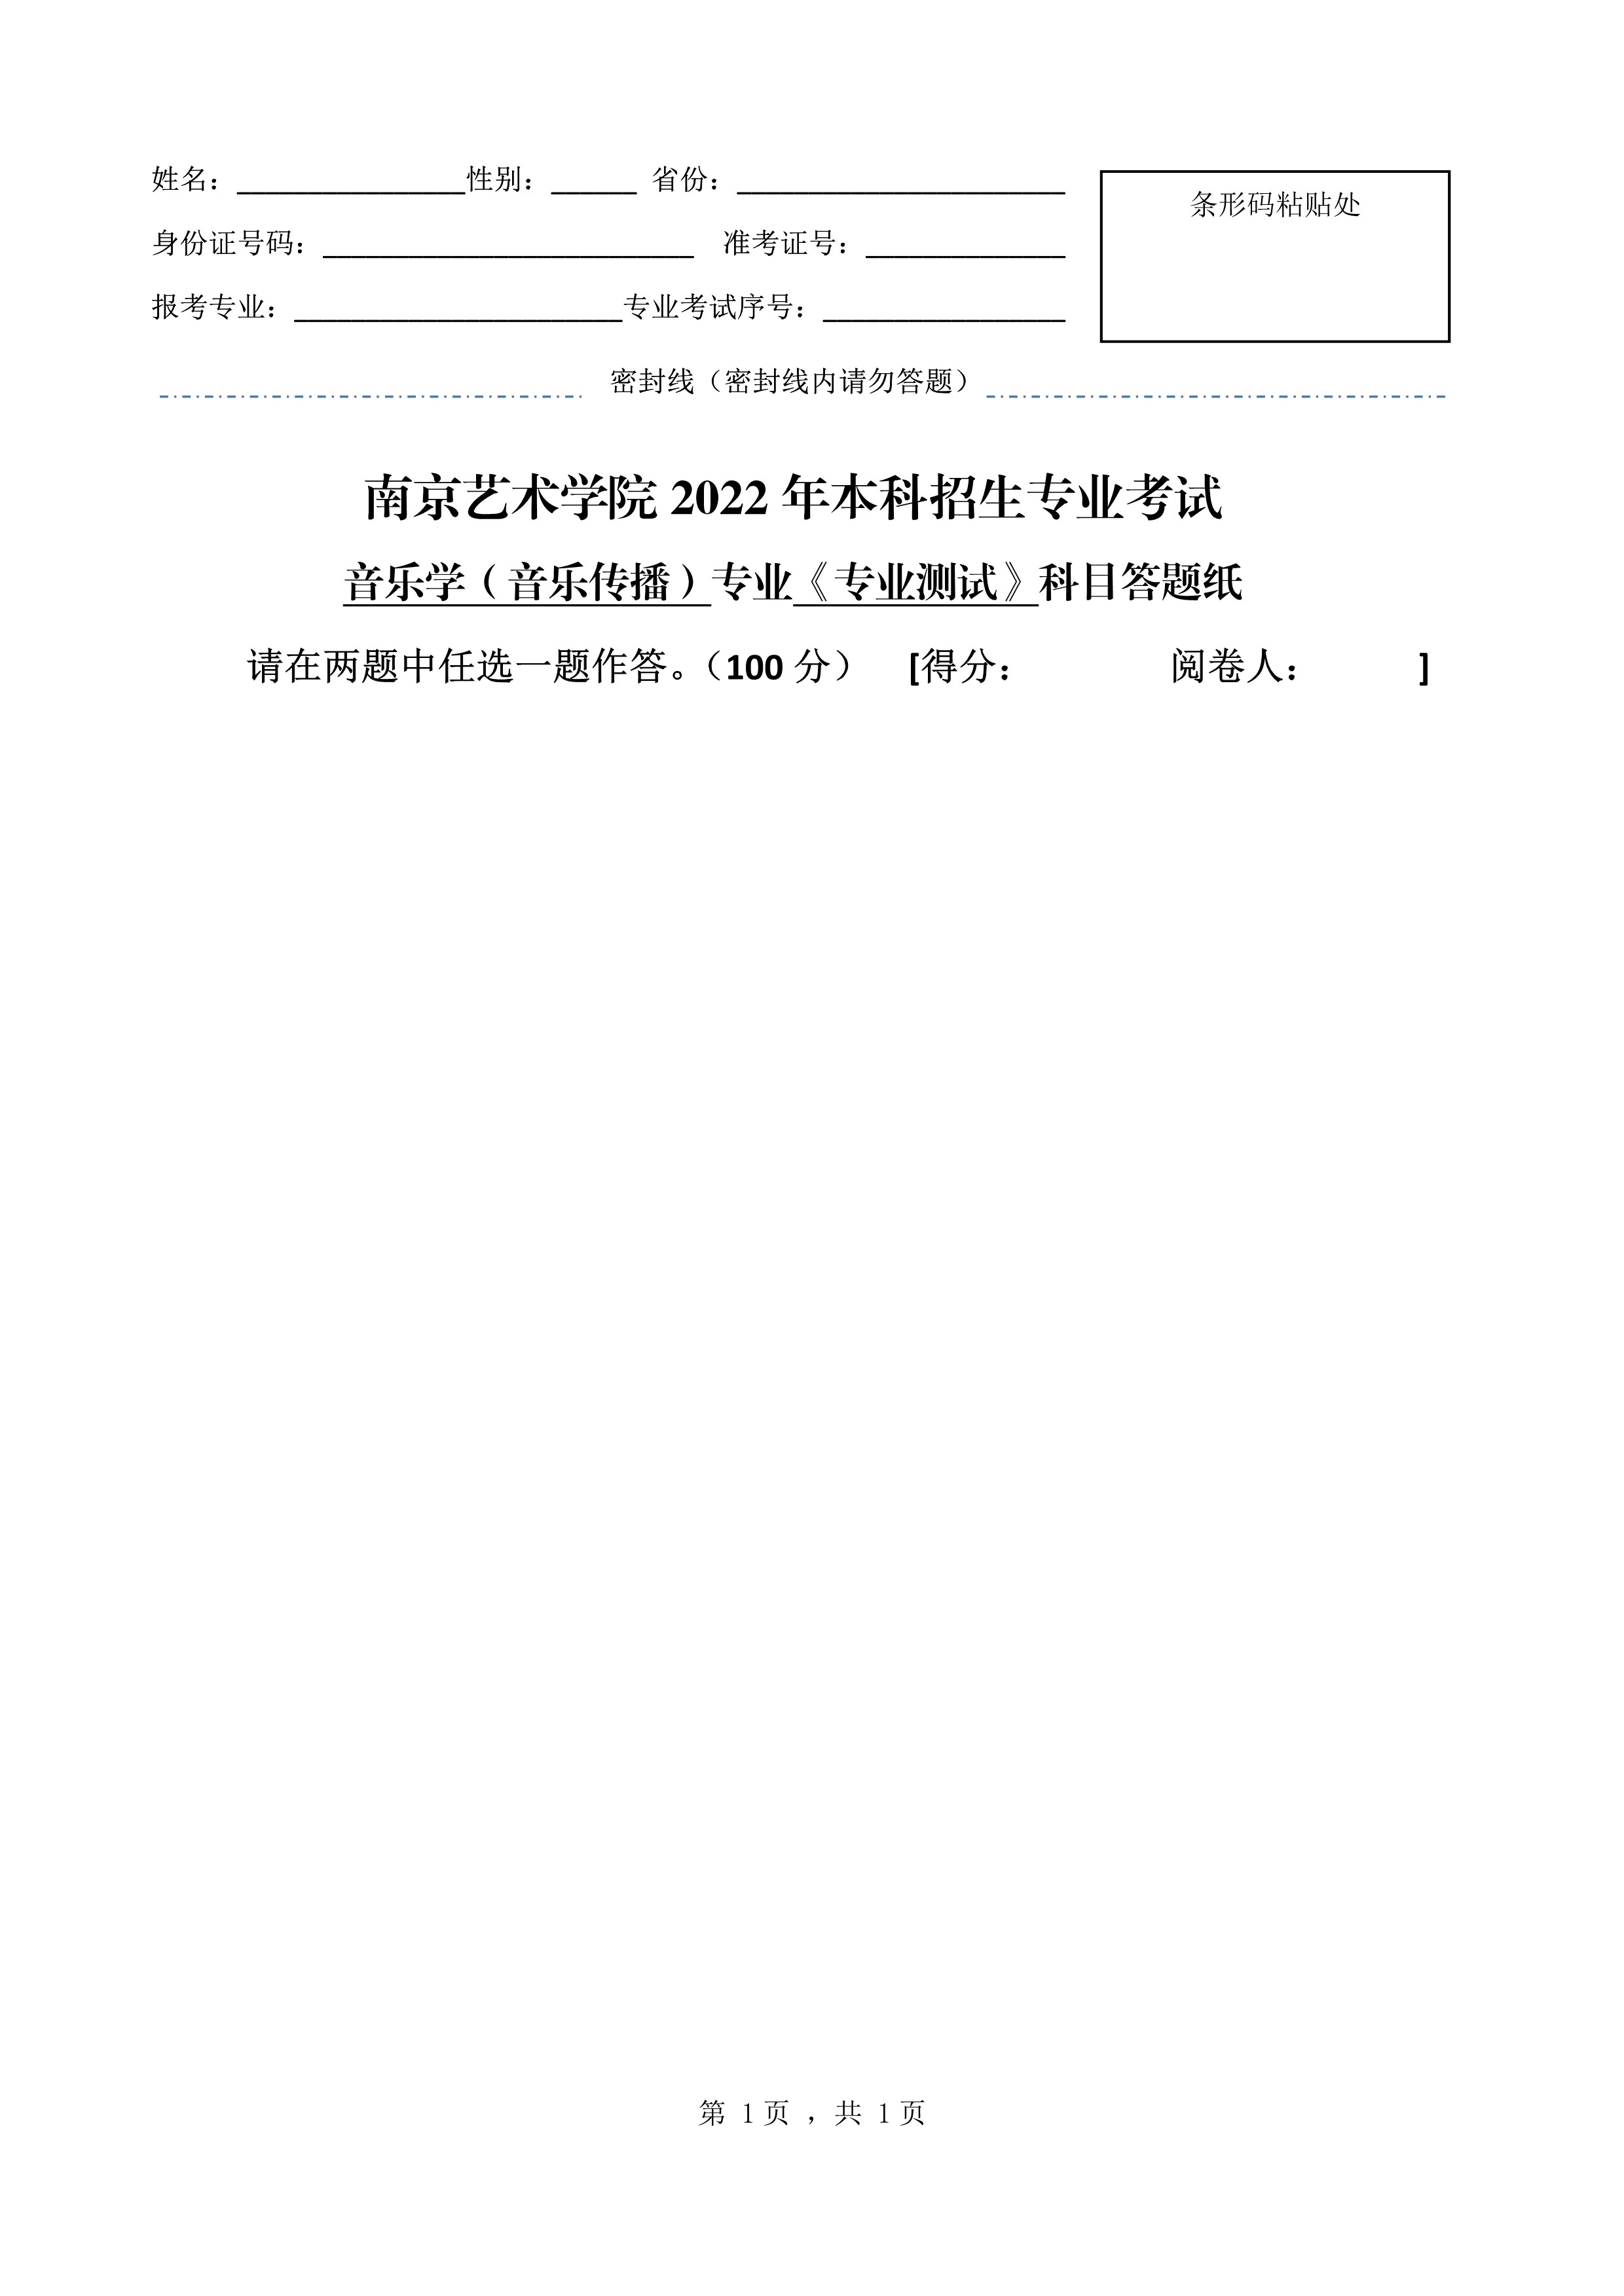 南京艺术学院2022年本科招生音乐学（音乐传播）专业《专业测试》科目考试答题纸 - 副本_1.jpg